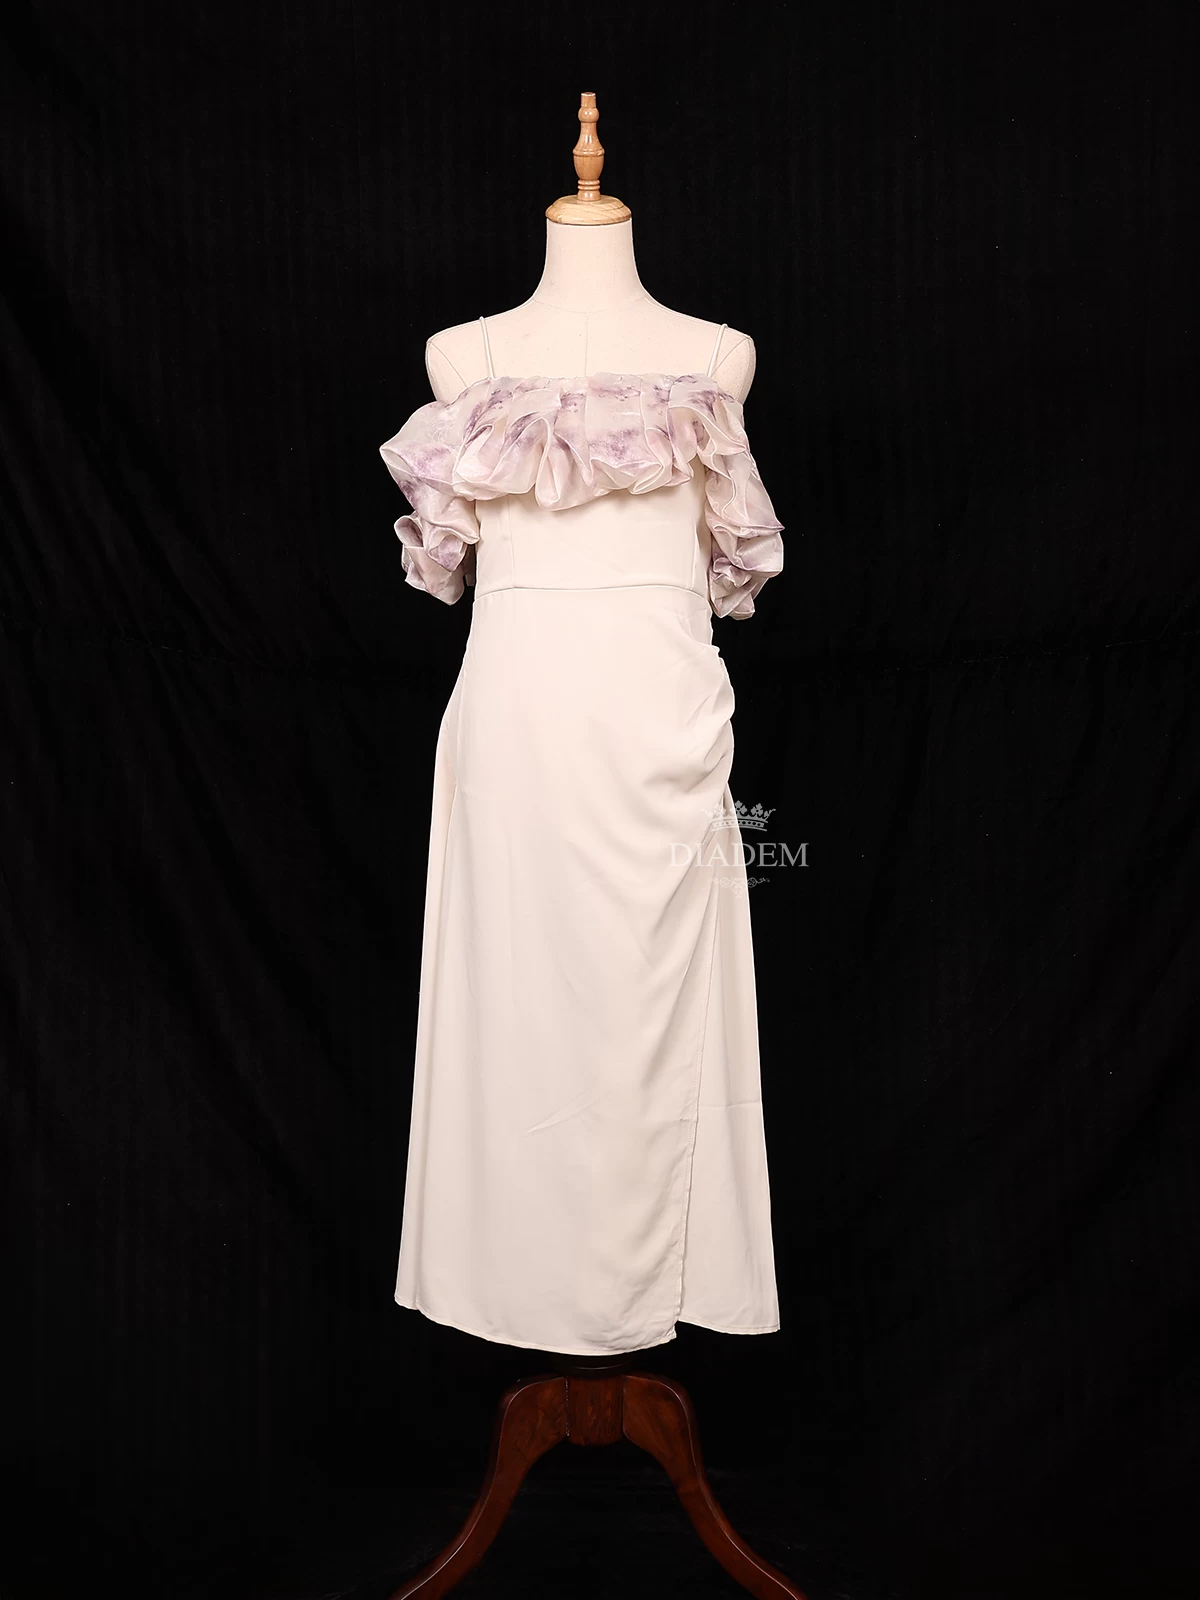 Dress Designs - Buy Best Designer Dresses online at best prices -  Flipkart.com